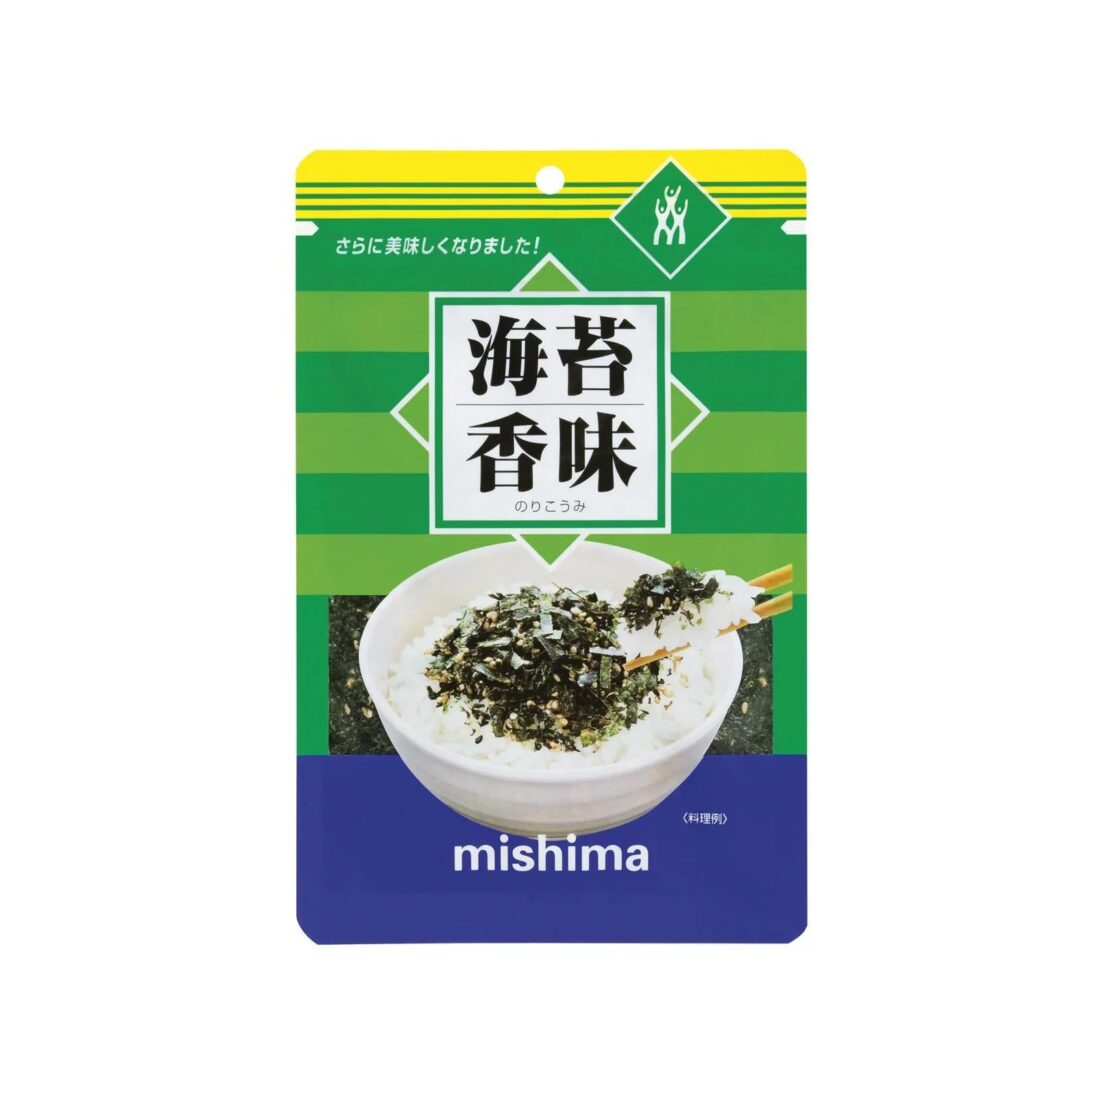 Mishima-Nori-Komi-Furikake-Sesame-Seed-Nori-Seaweed-Rice-Seasoning-40g-Japanese-Taste_2048x.jpg